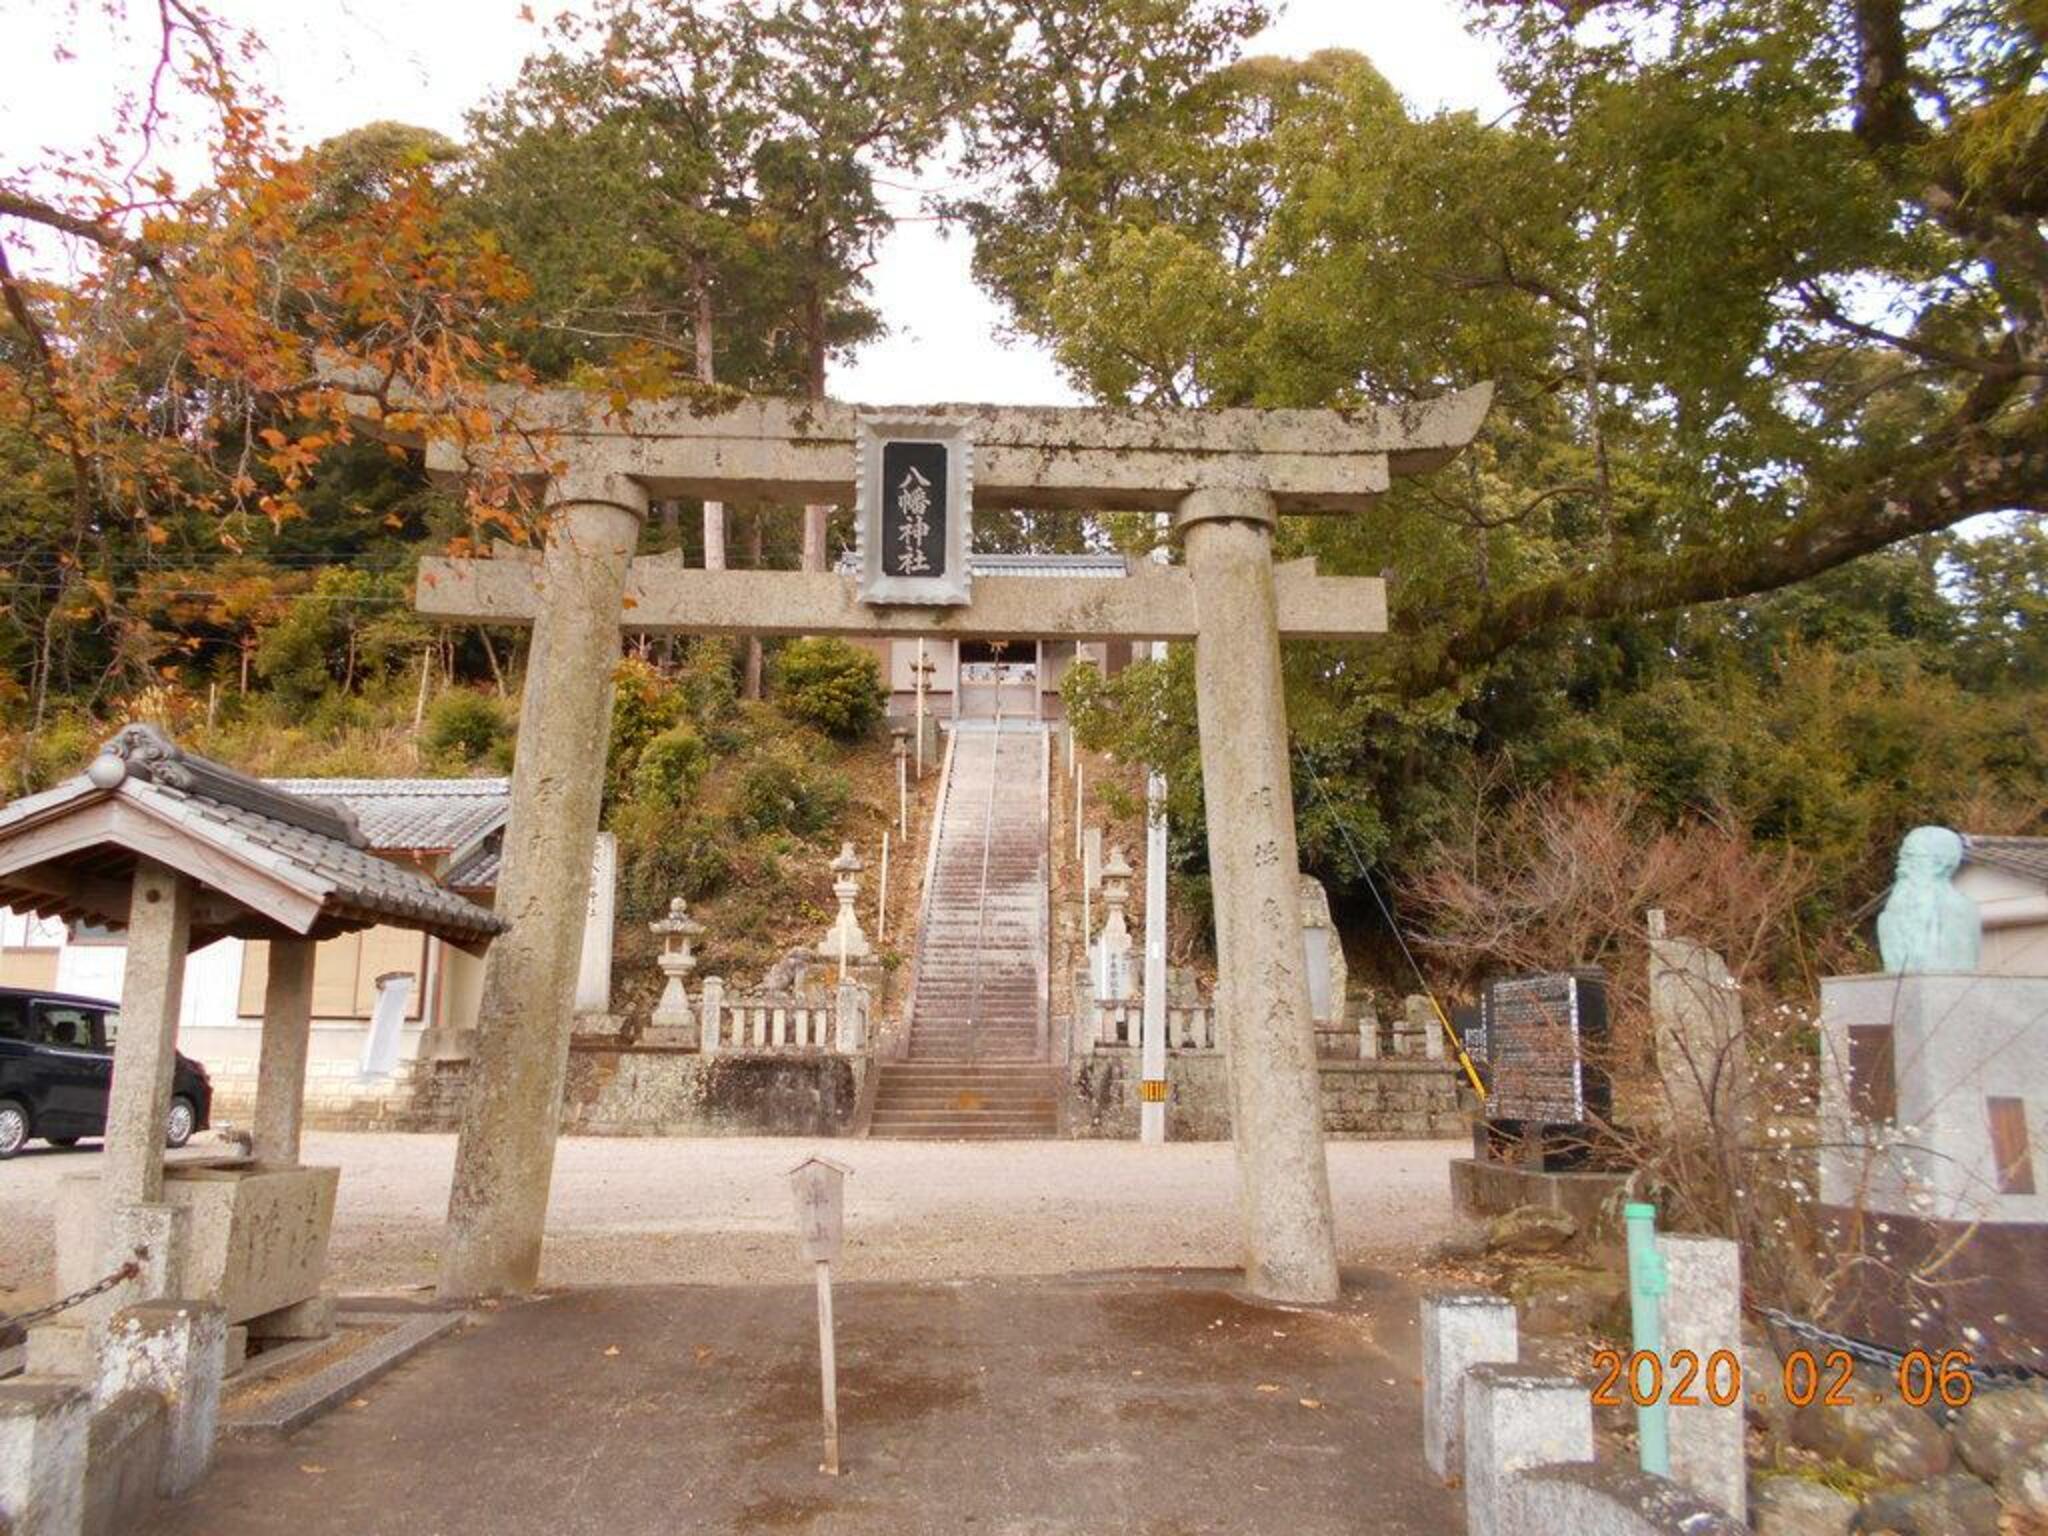 櫛渕八幡神社 - 小松島市櫛渕町/神社 | Yahoo!マップ